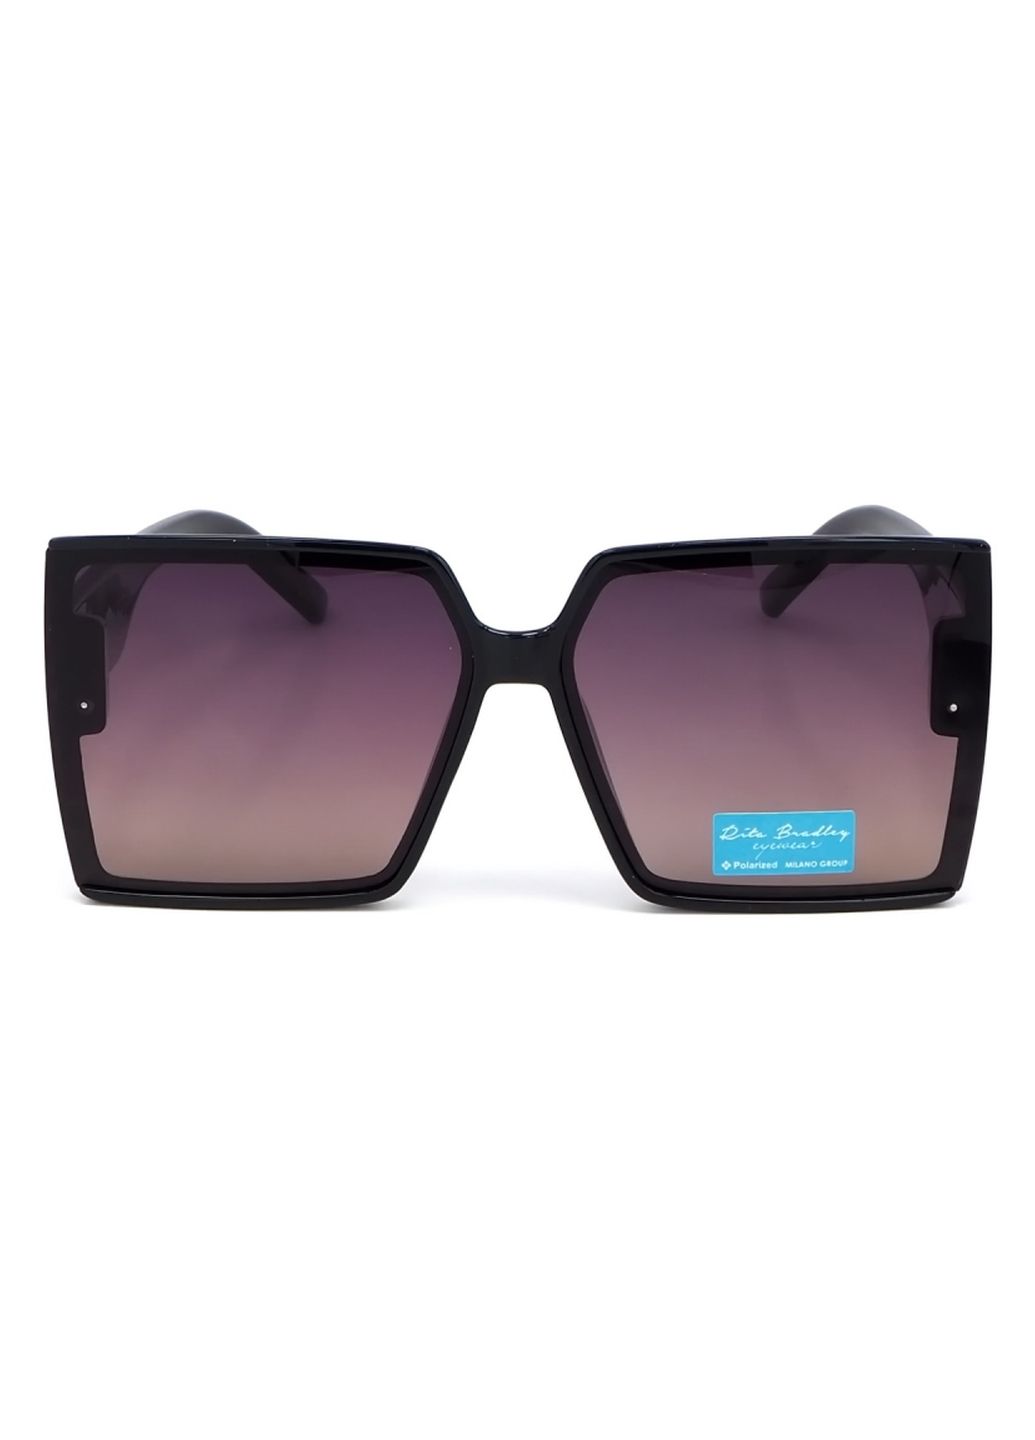 Купить Женские солнцезащитные очки Rita Bradley с поляризацией RB724 112046 в интернет-магазине